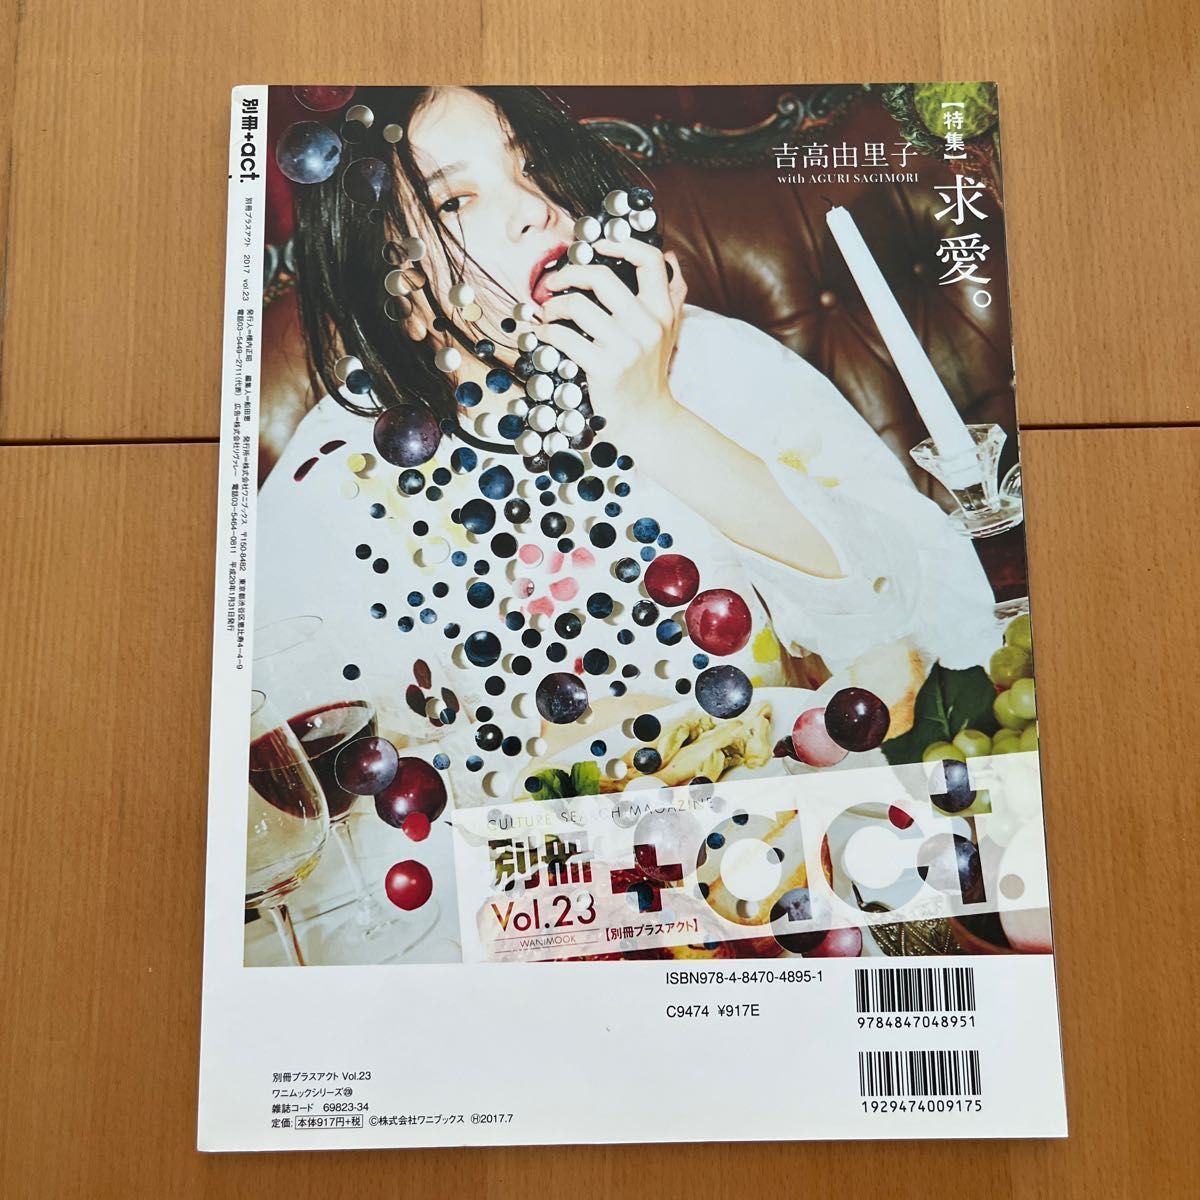 別冊+act Vol 23 (ワニムックシリーズ230)三浦春馬 表紙/田中圭 吉高